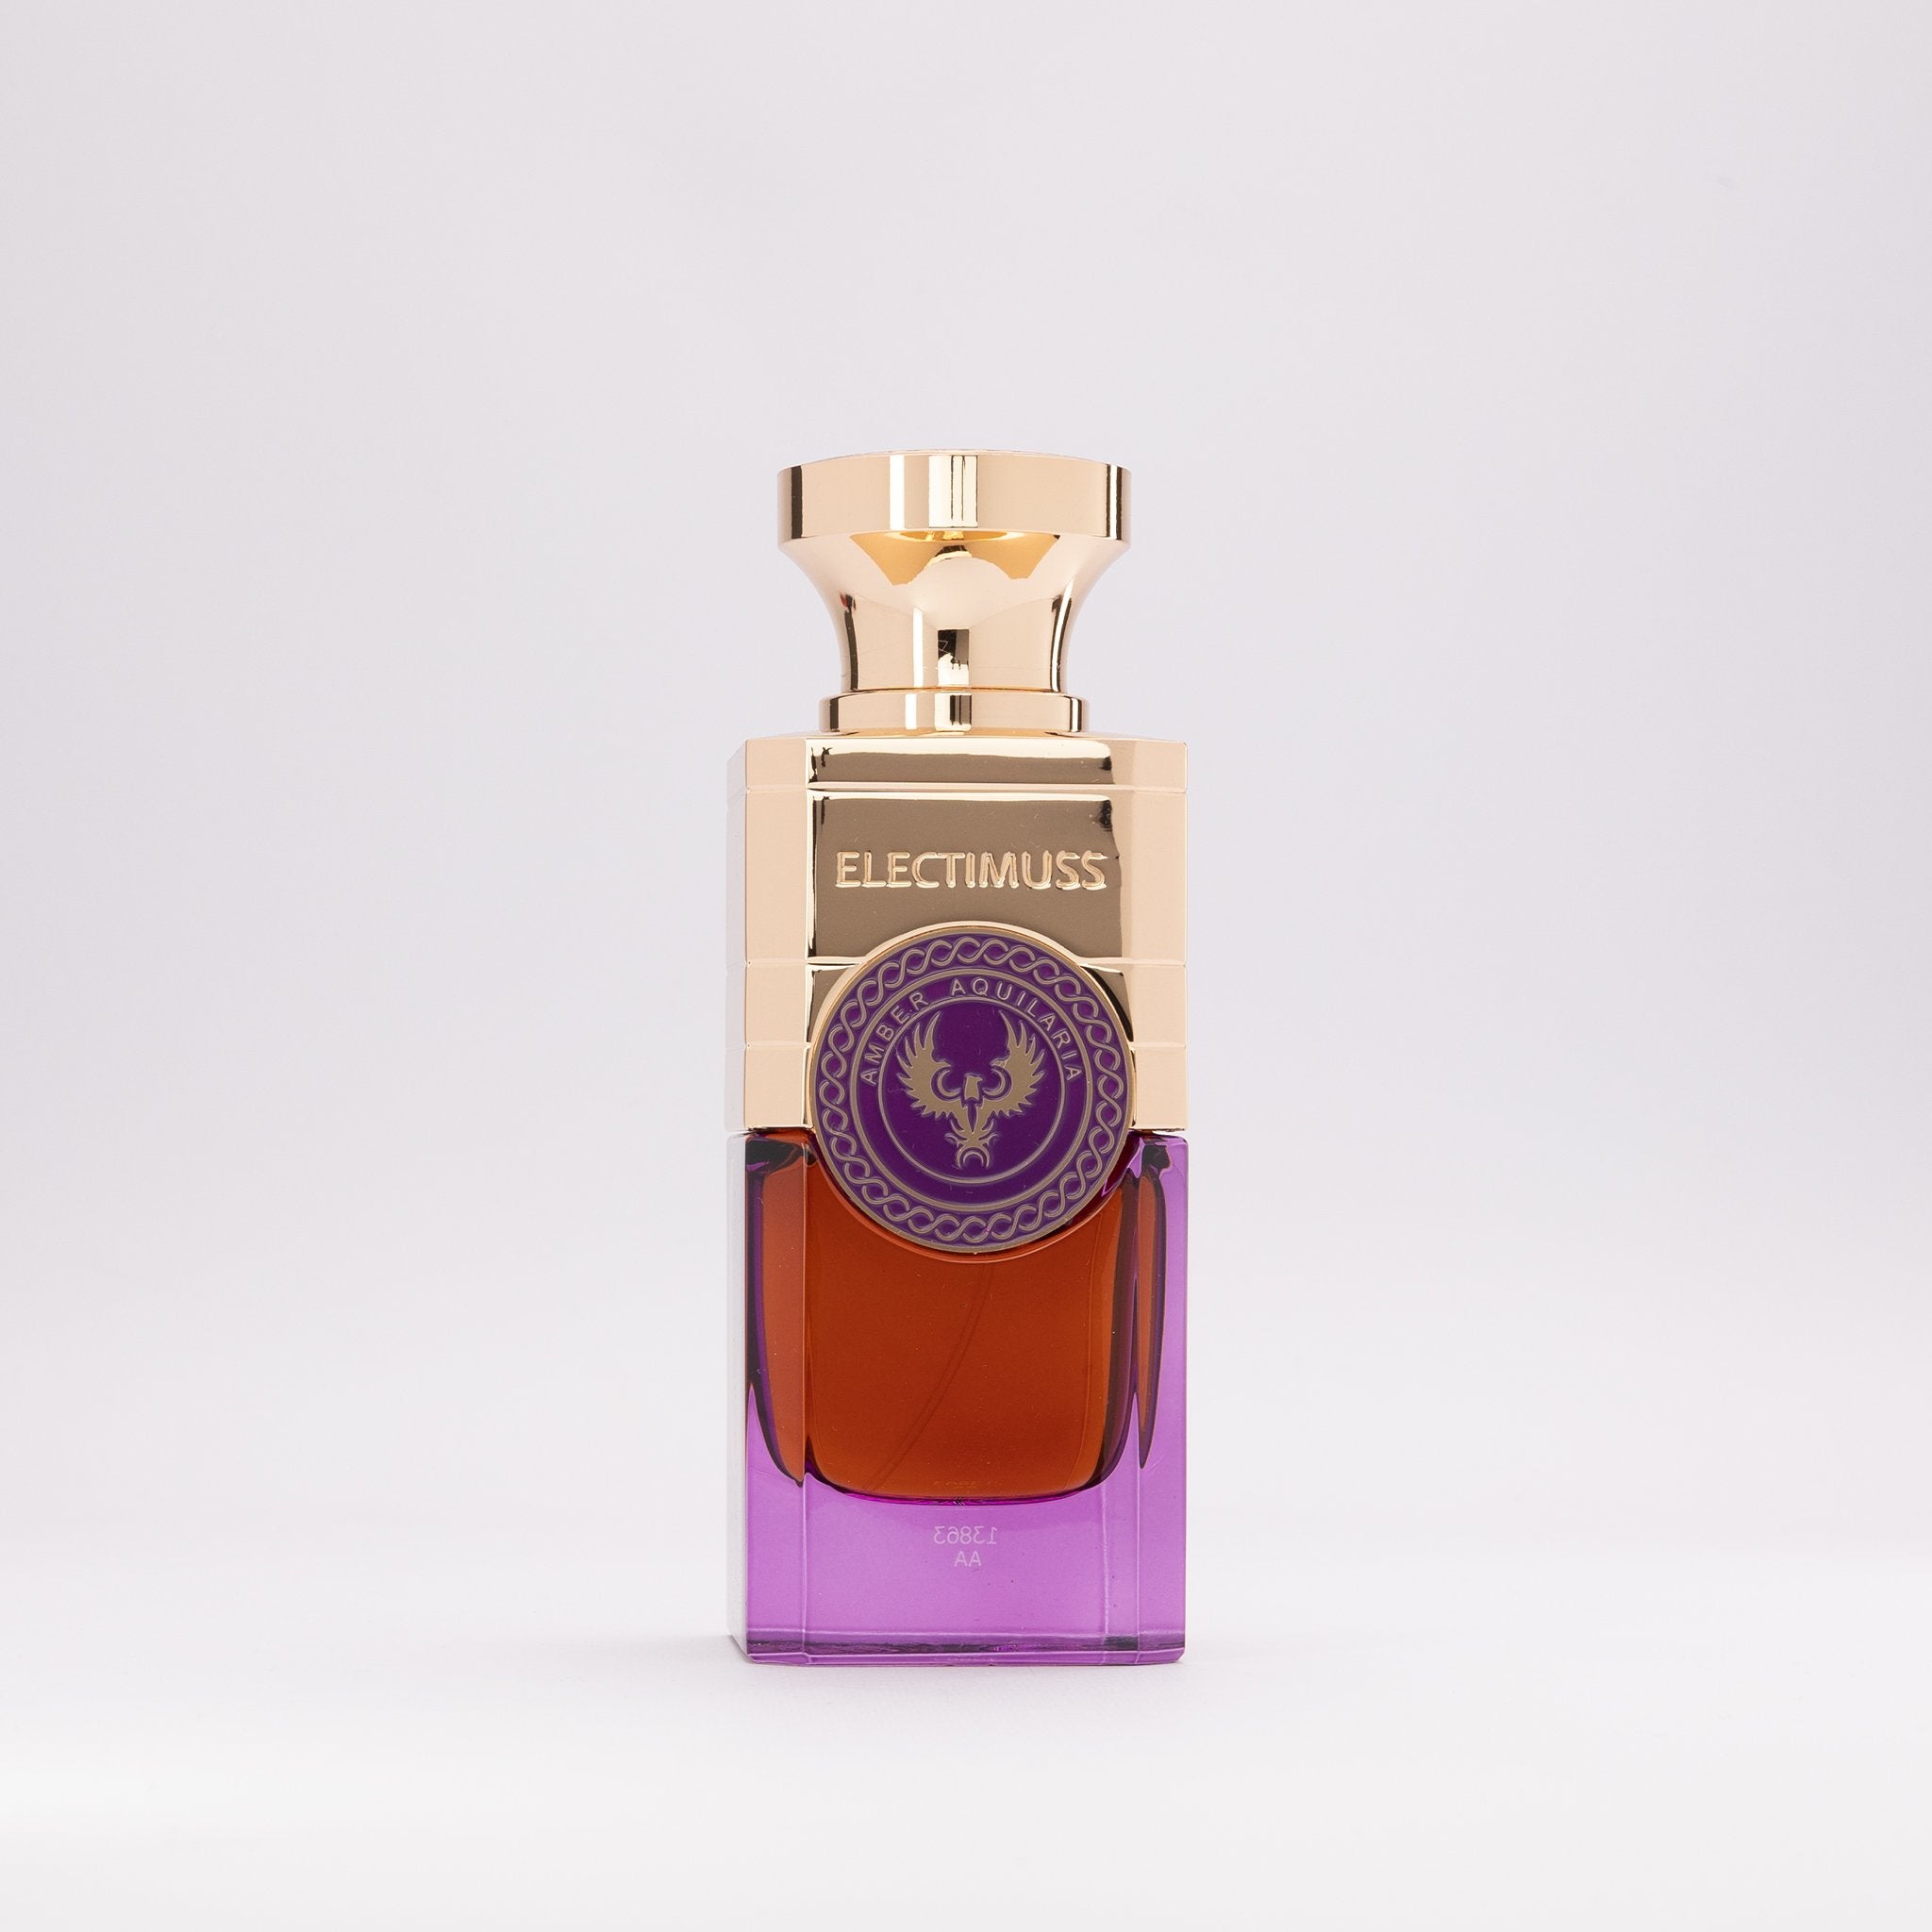 Amber Aquilaria – OTRO perfume concept